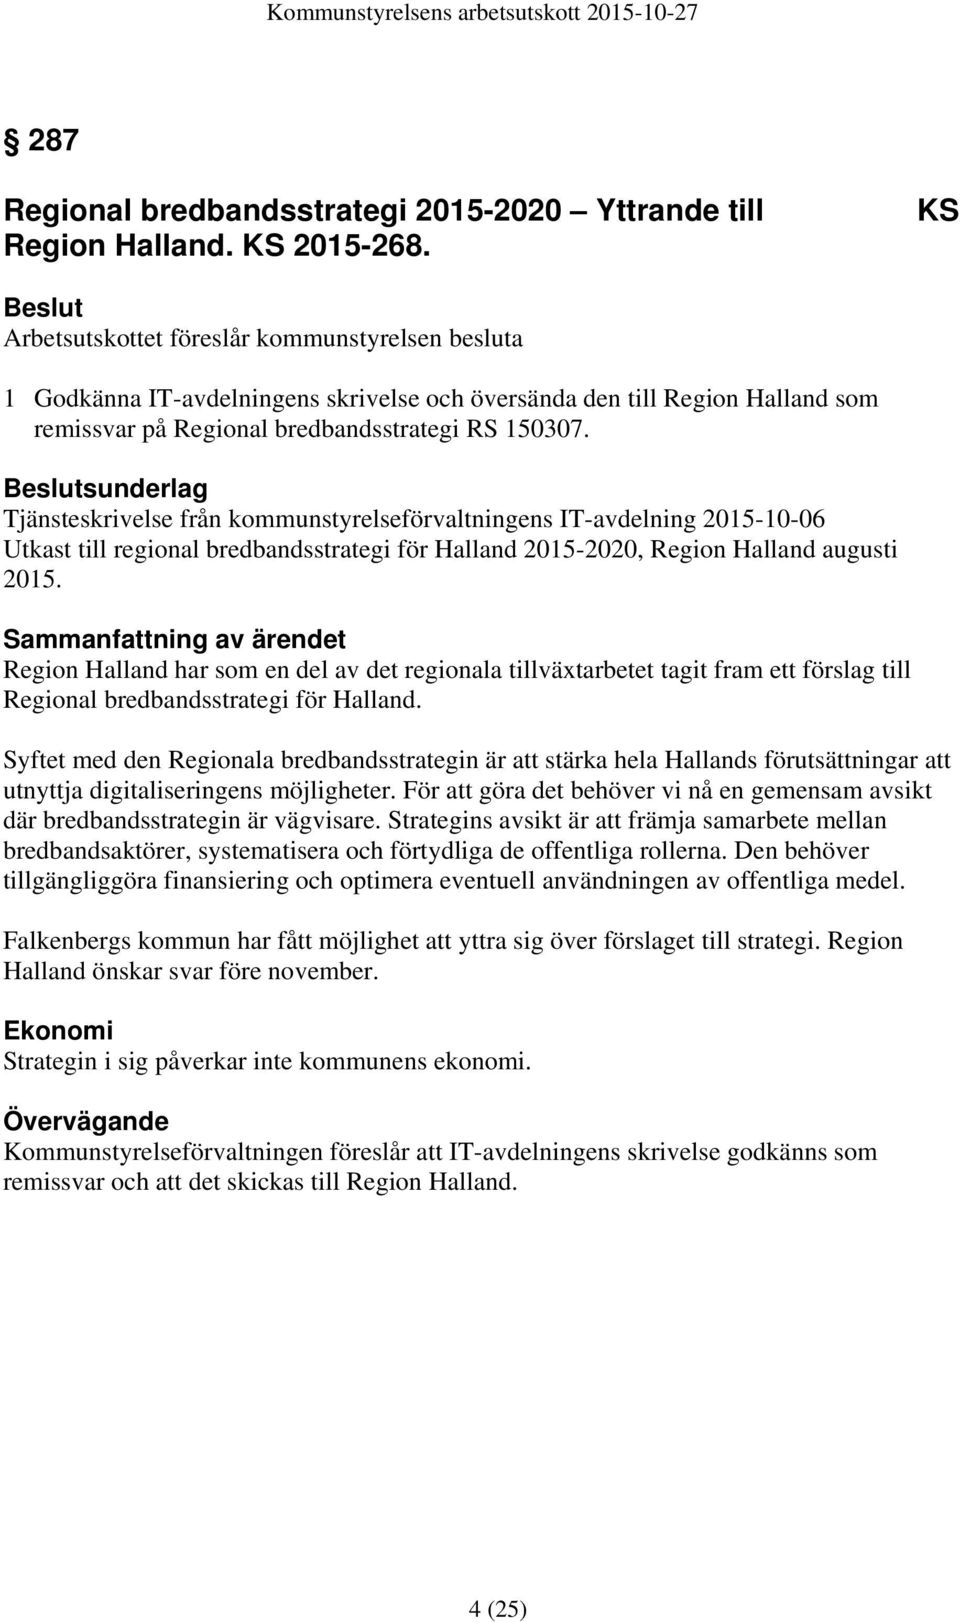 sunderlag Tjänsteskrivelse från kommunstyrelseförvaltningens IT-avdelning 2015-10-06 Utkast till regional bredbandsstrategi för Halland 2015-2020, Region Halland augusti 2015.